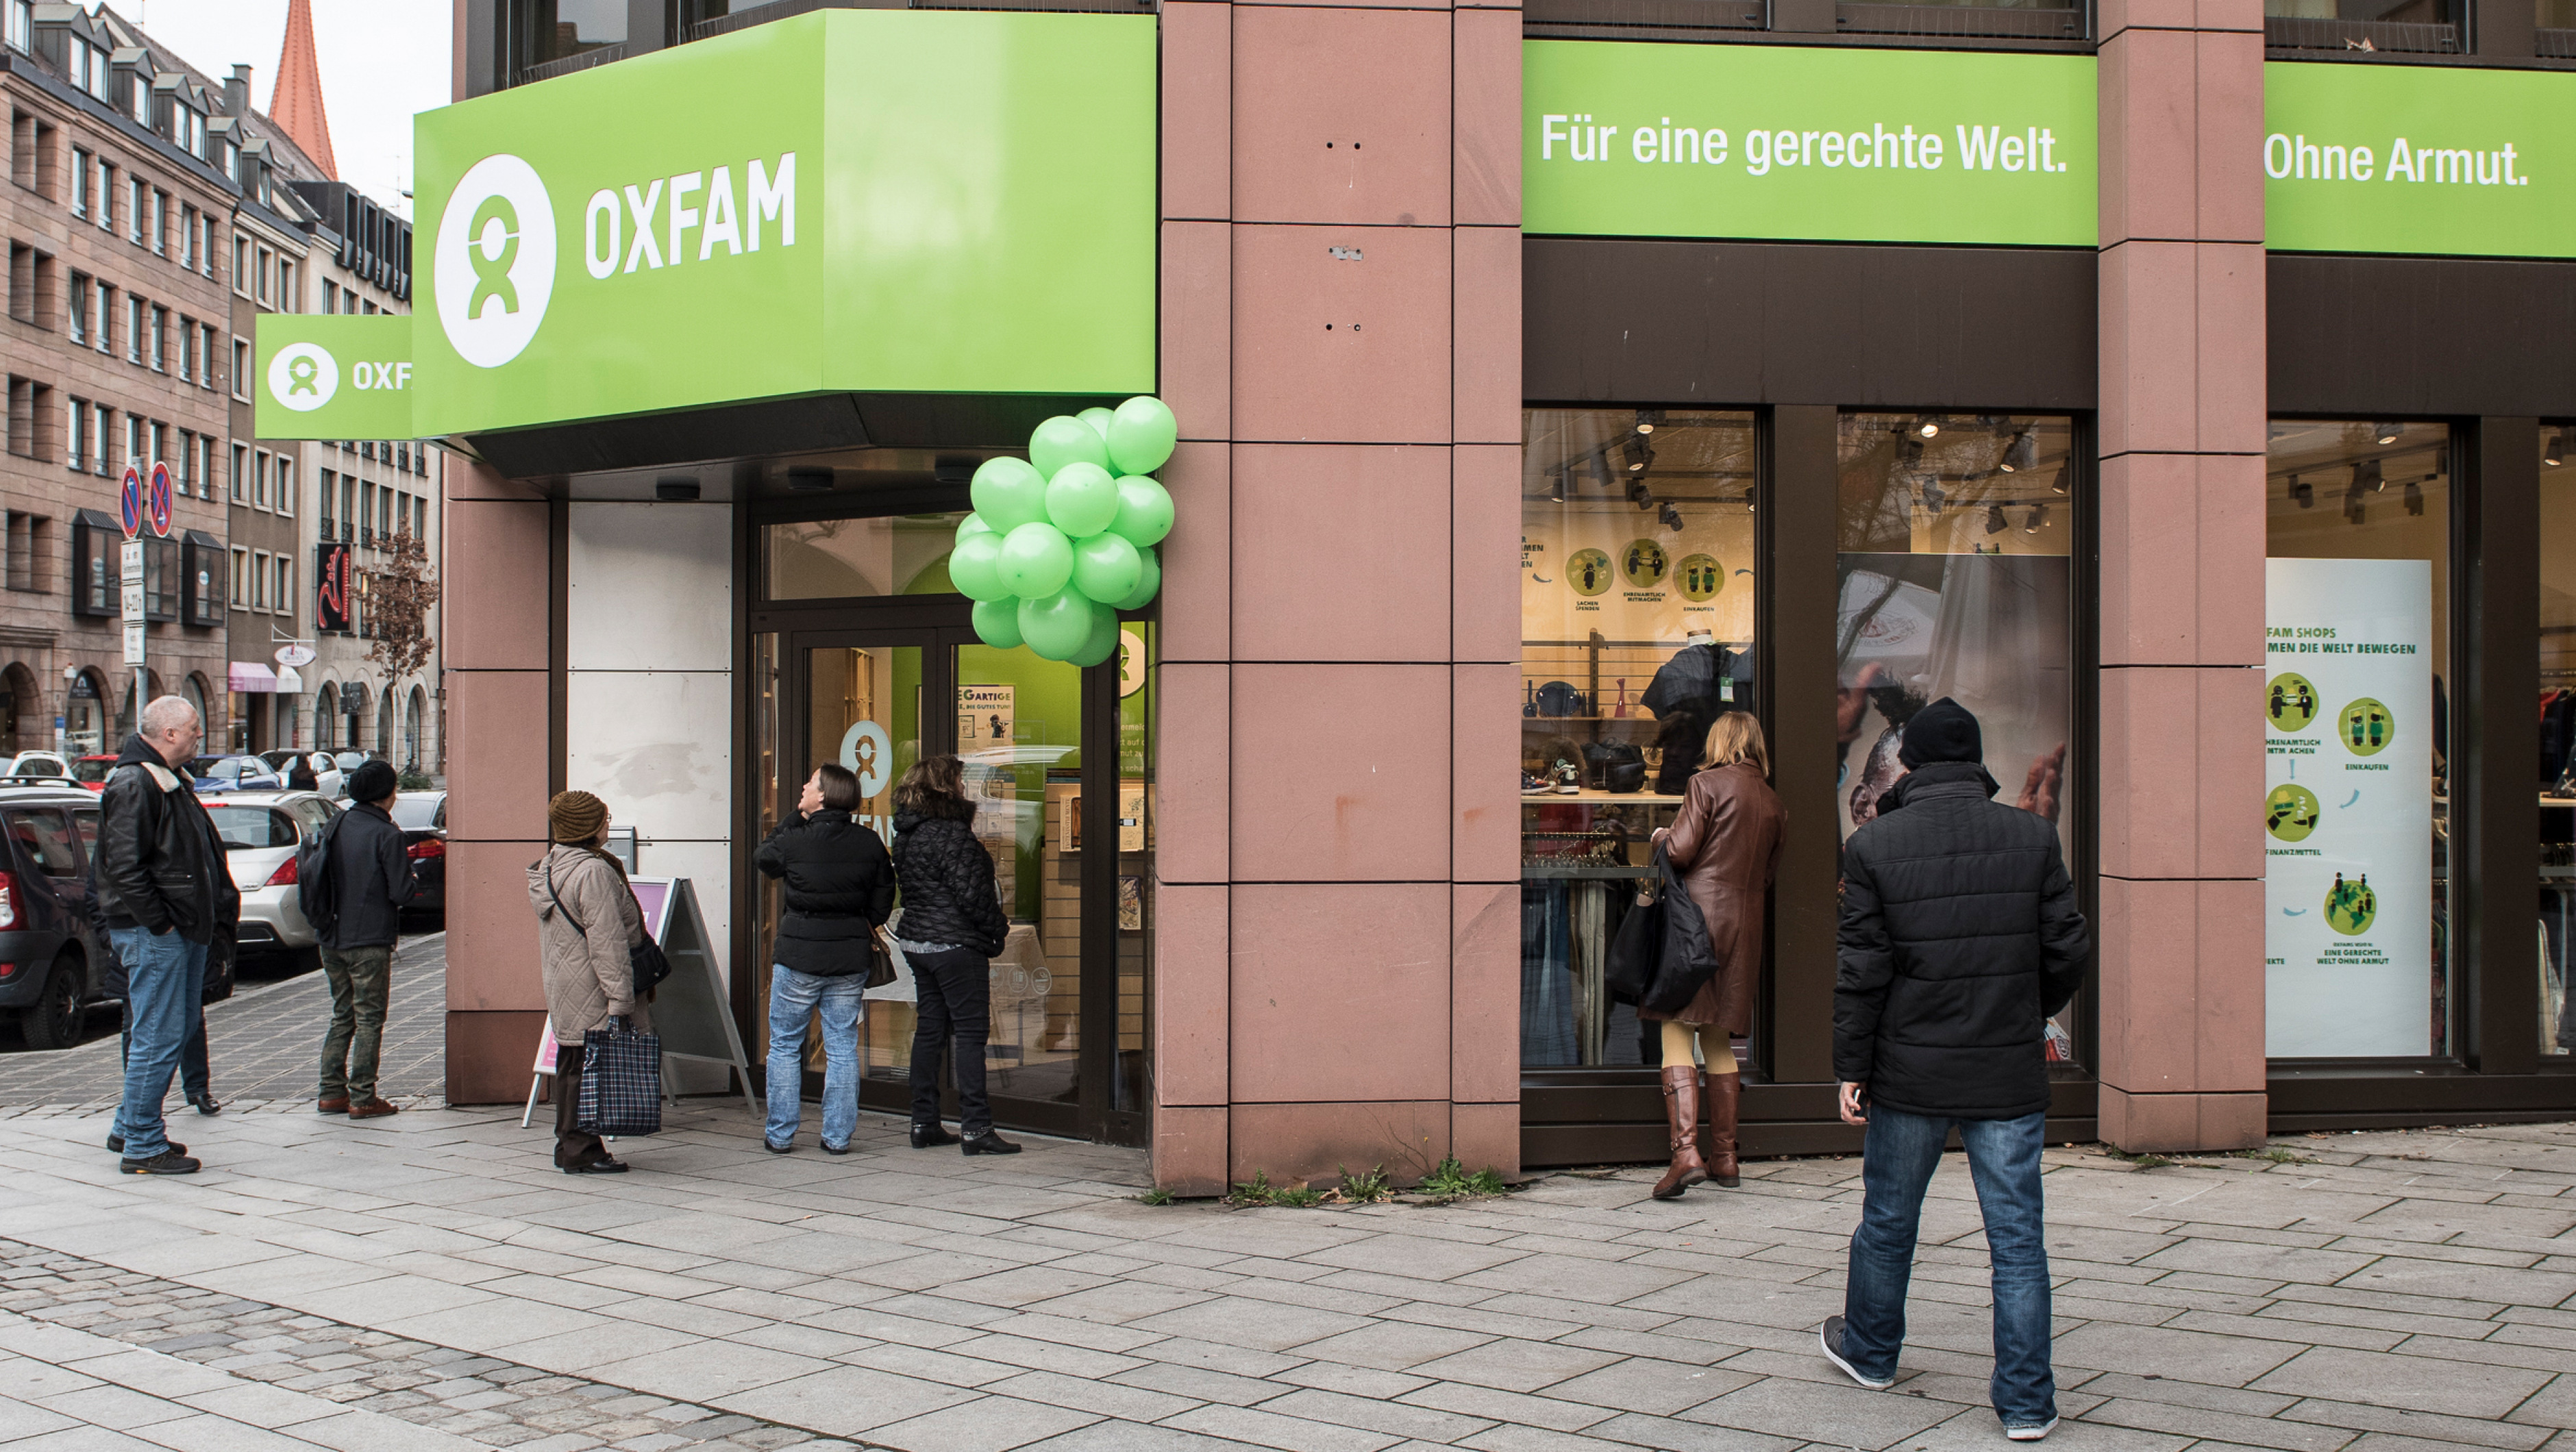 Oxfam Shop Nürnberg 2018 - Außenansicht